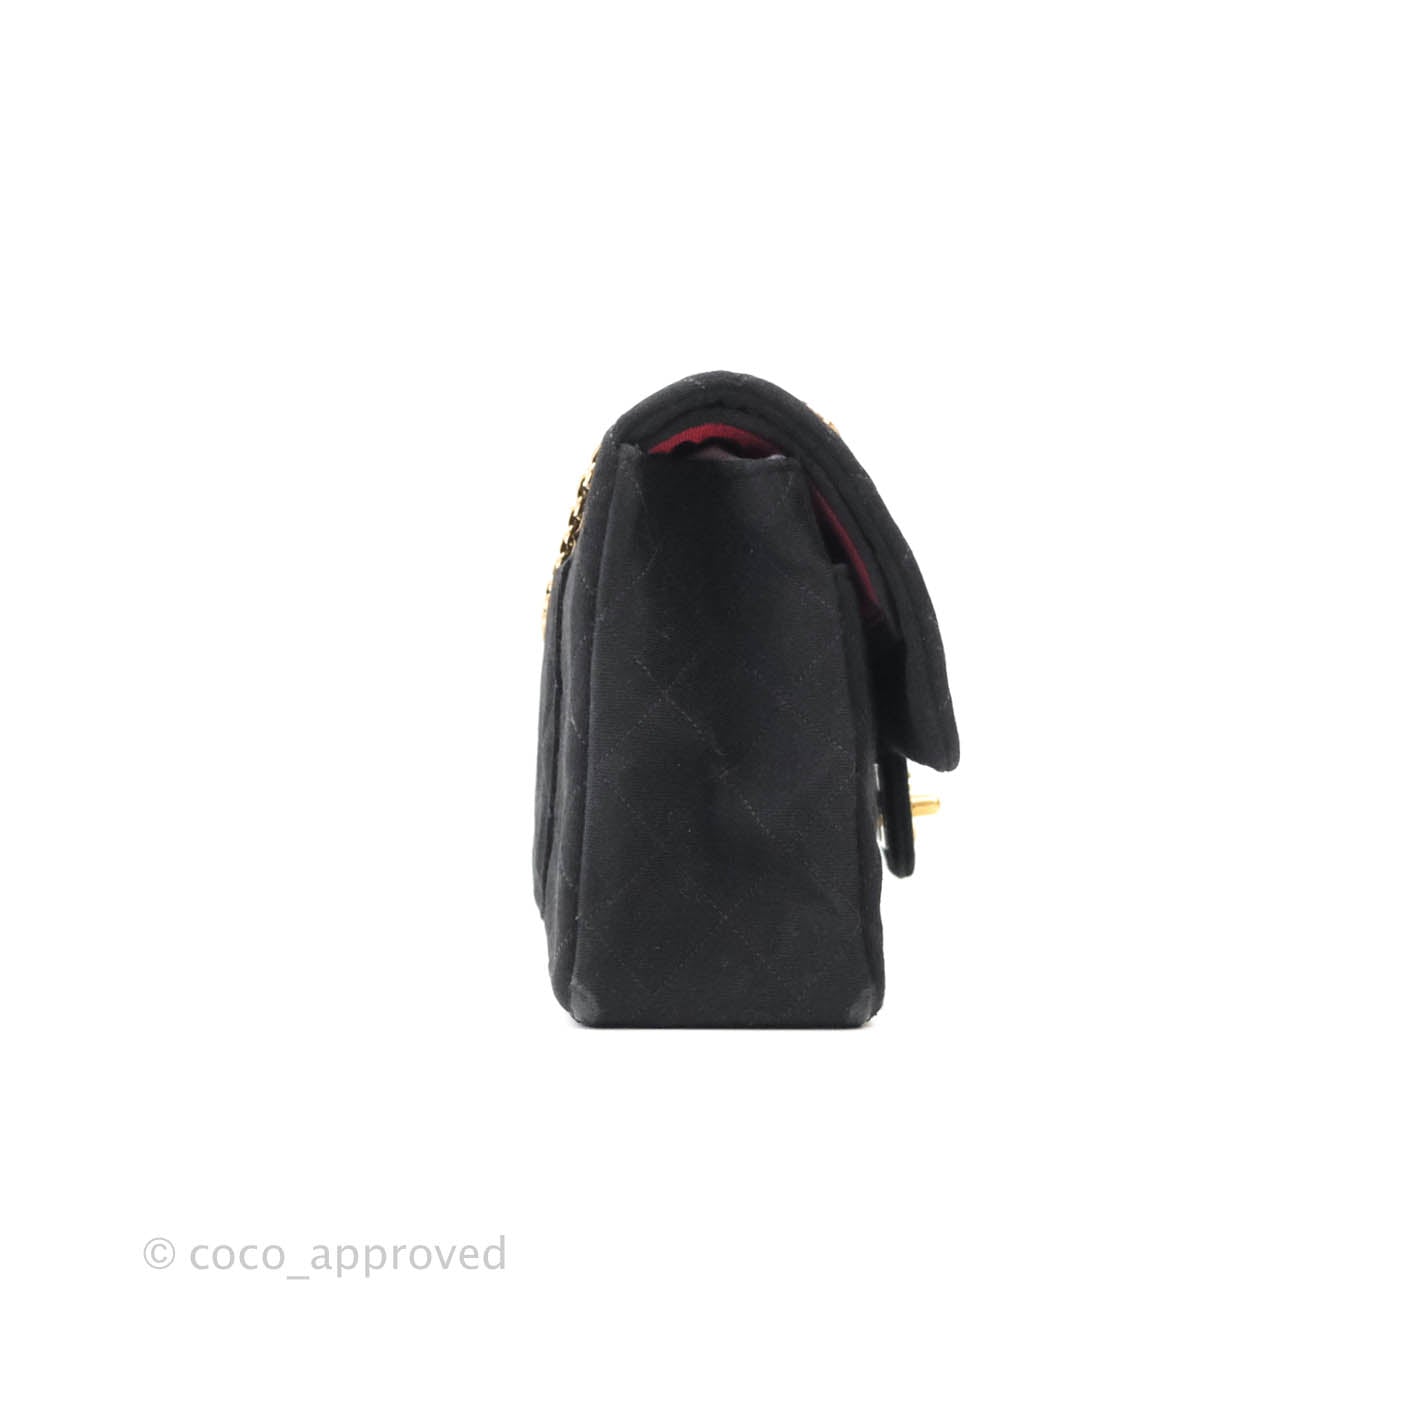 CHANEL Jersey In Women's Bags & Handbags for sale